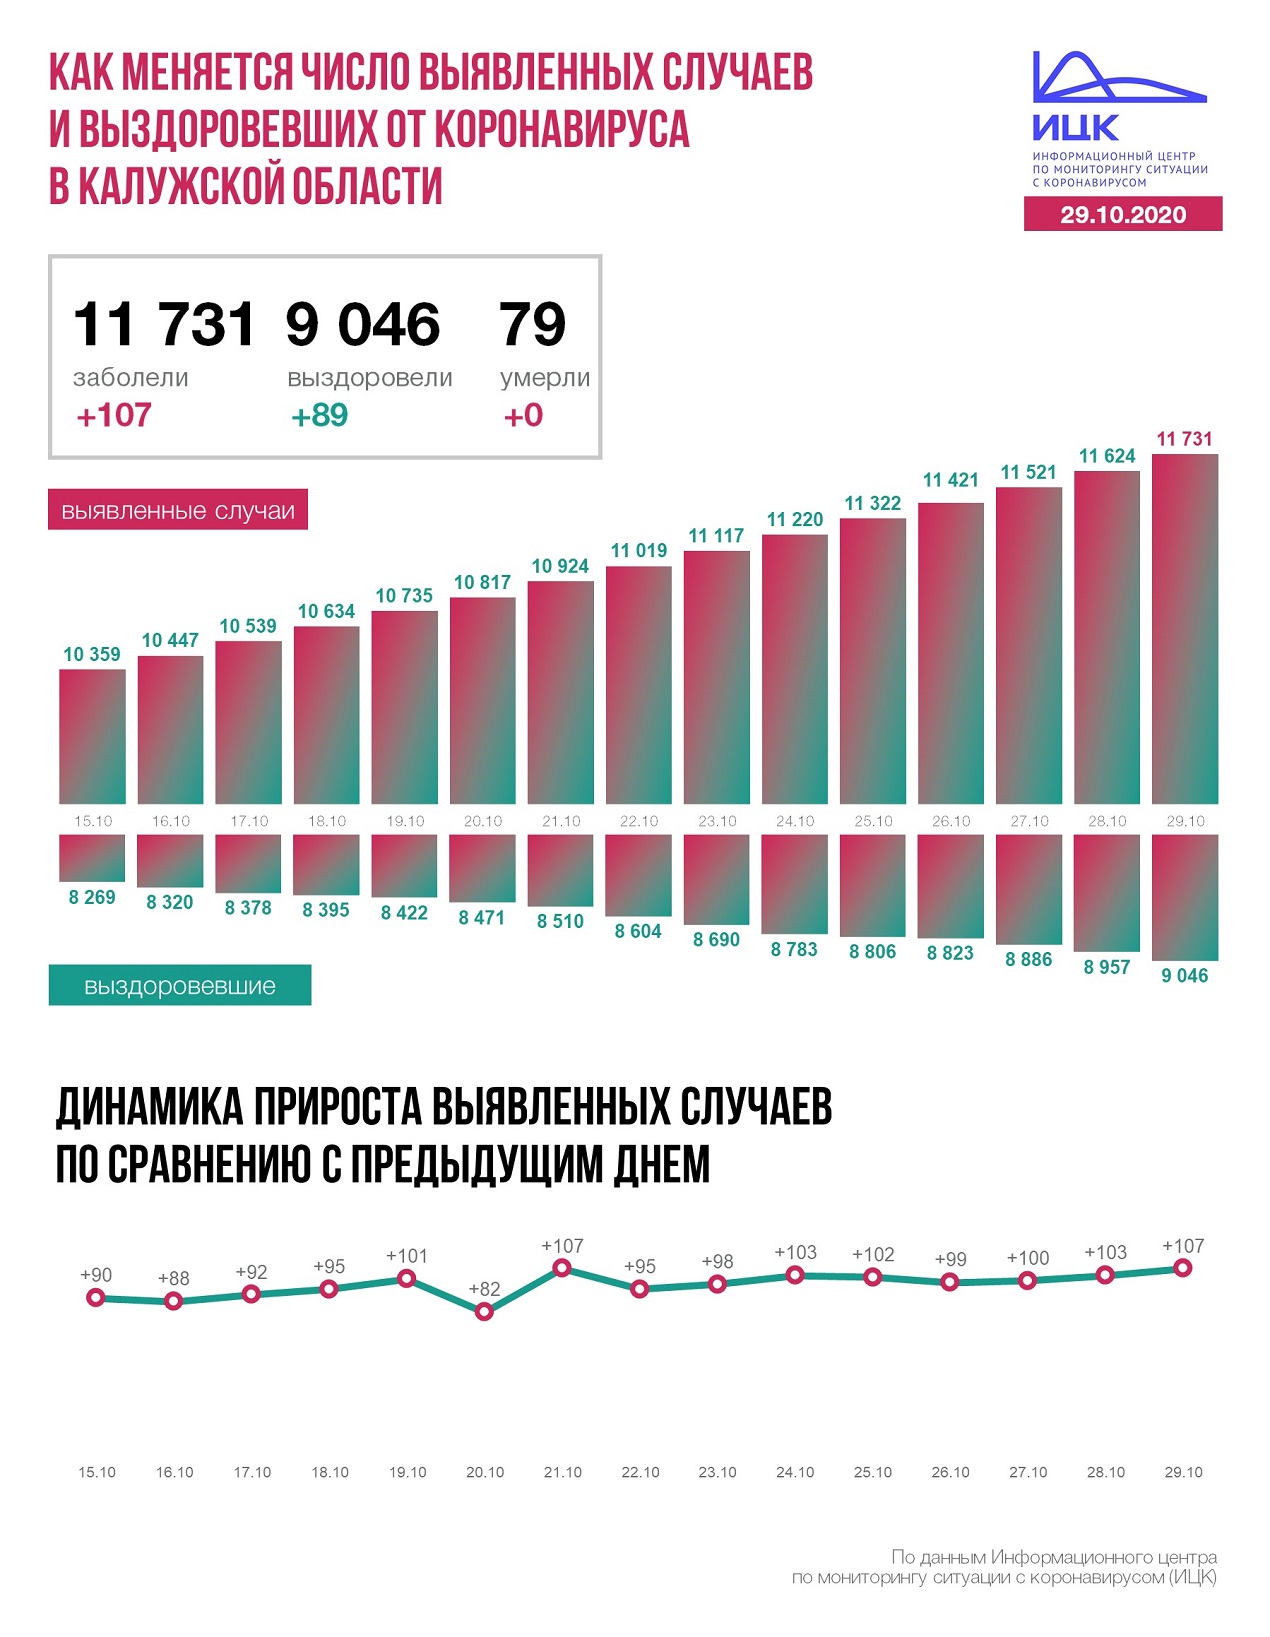 Официальные данные федерального оперативного штаба по коронавирусу в Калужской области на 29 октября 2020 года.